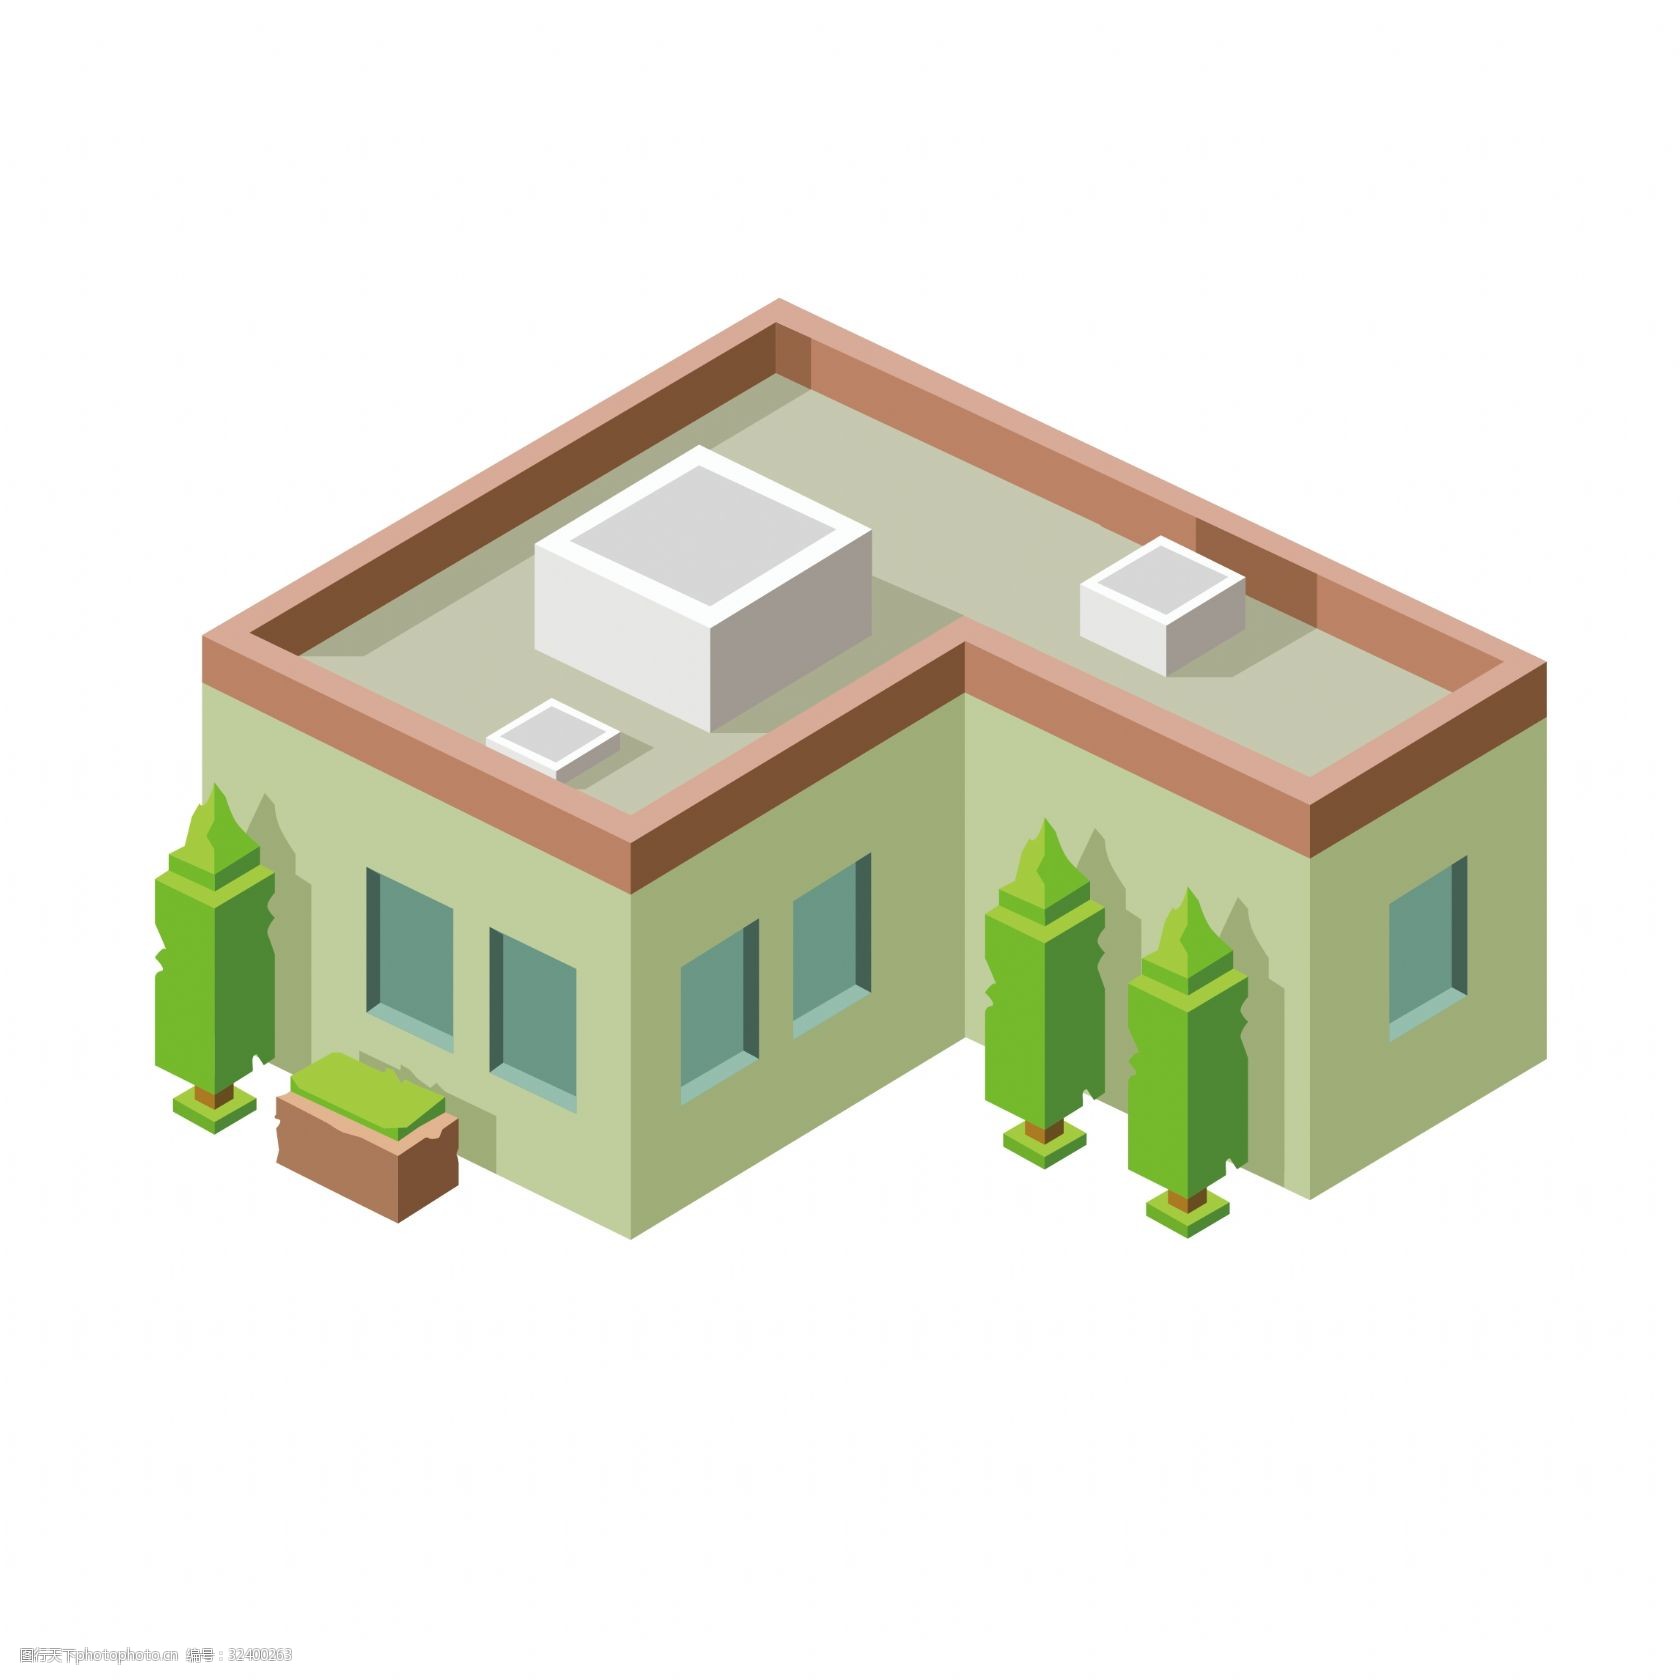 关键词:25d方块房子矢量素材 卡通 卡通房子 房子 25d房子 方块绿植